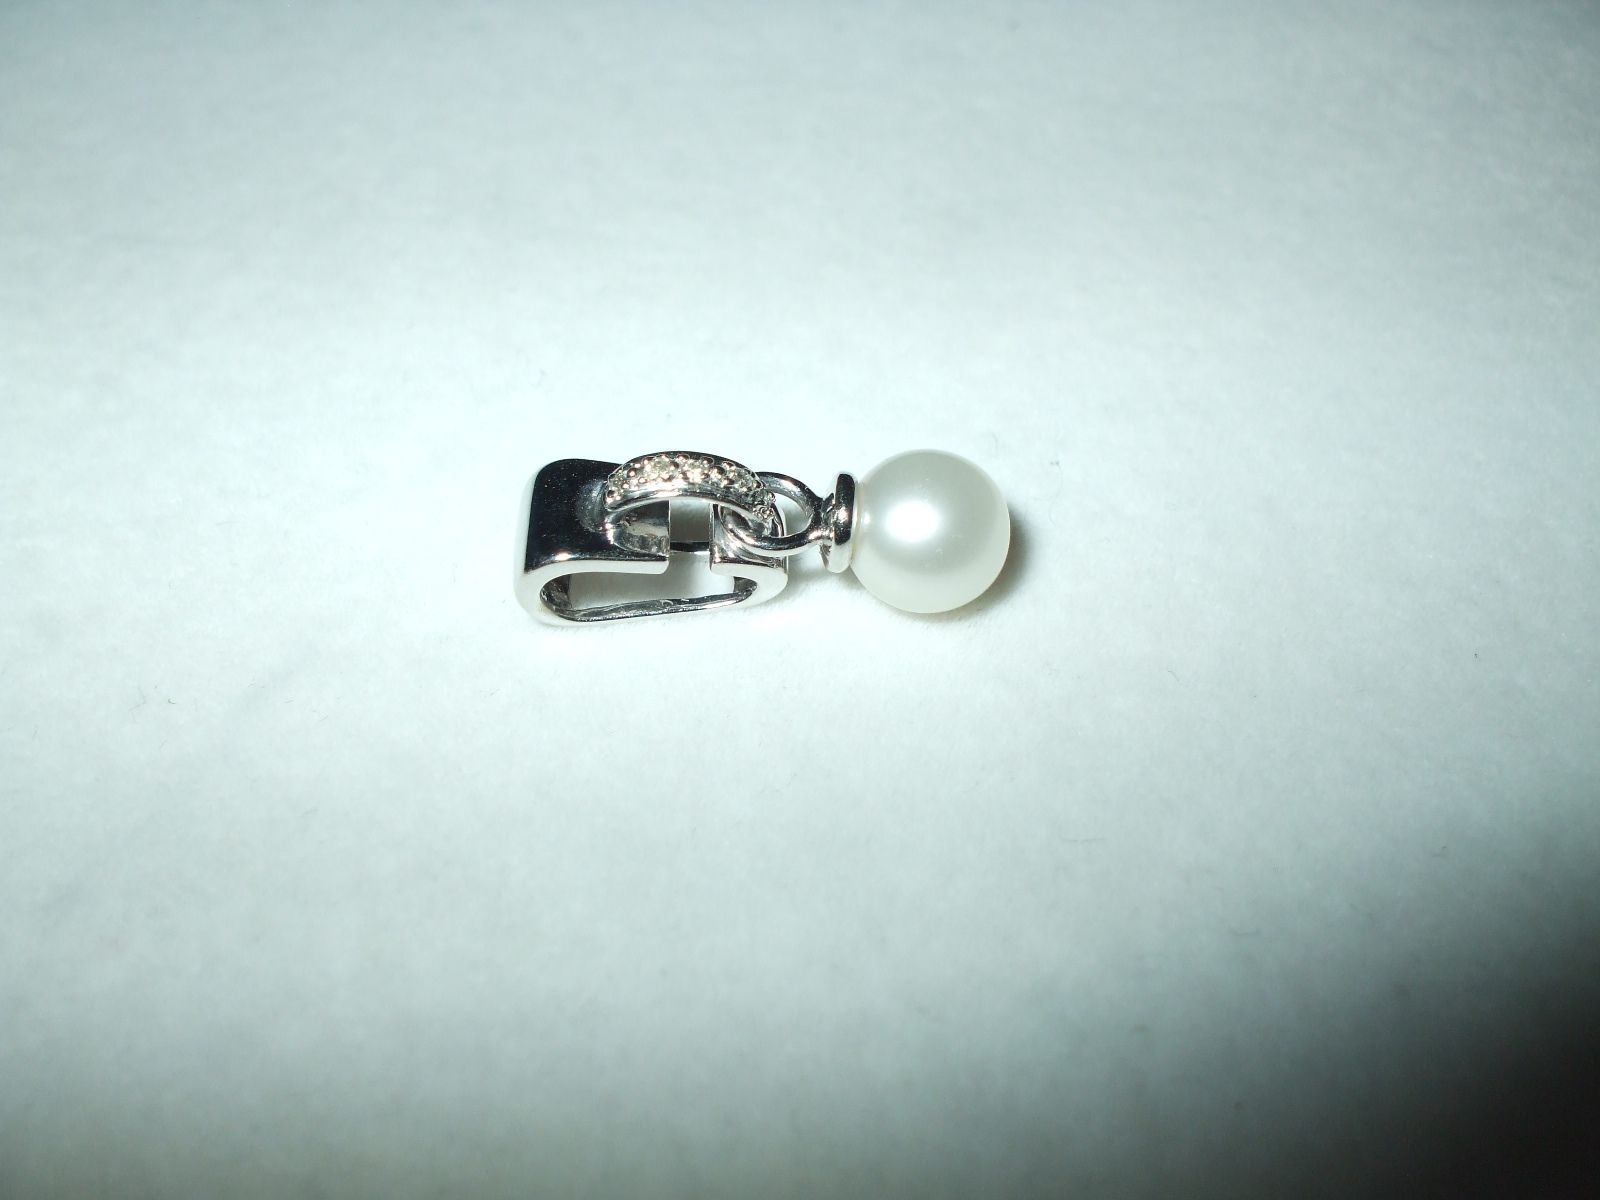 Genuine Cultured Pearl & Diamond Pendant 14K white gold $480